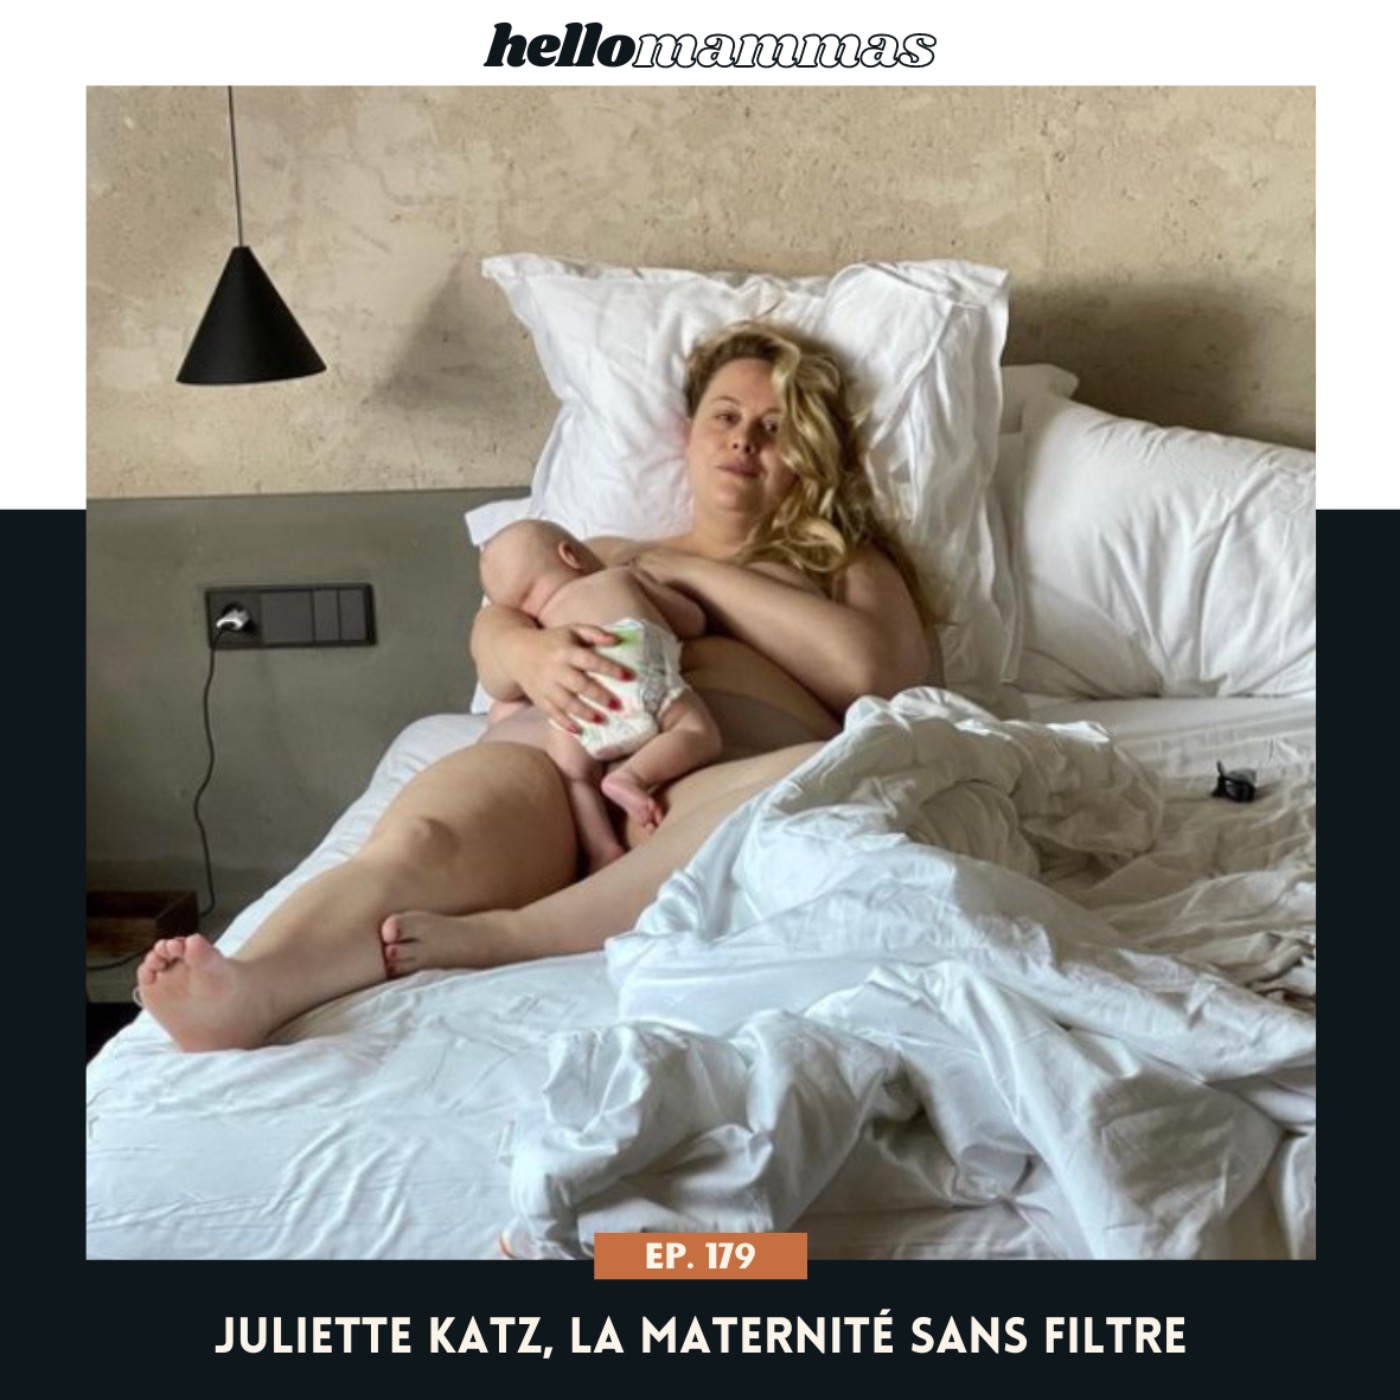 Juliette Katz, la maternité sans filtre